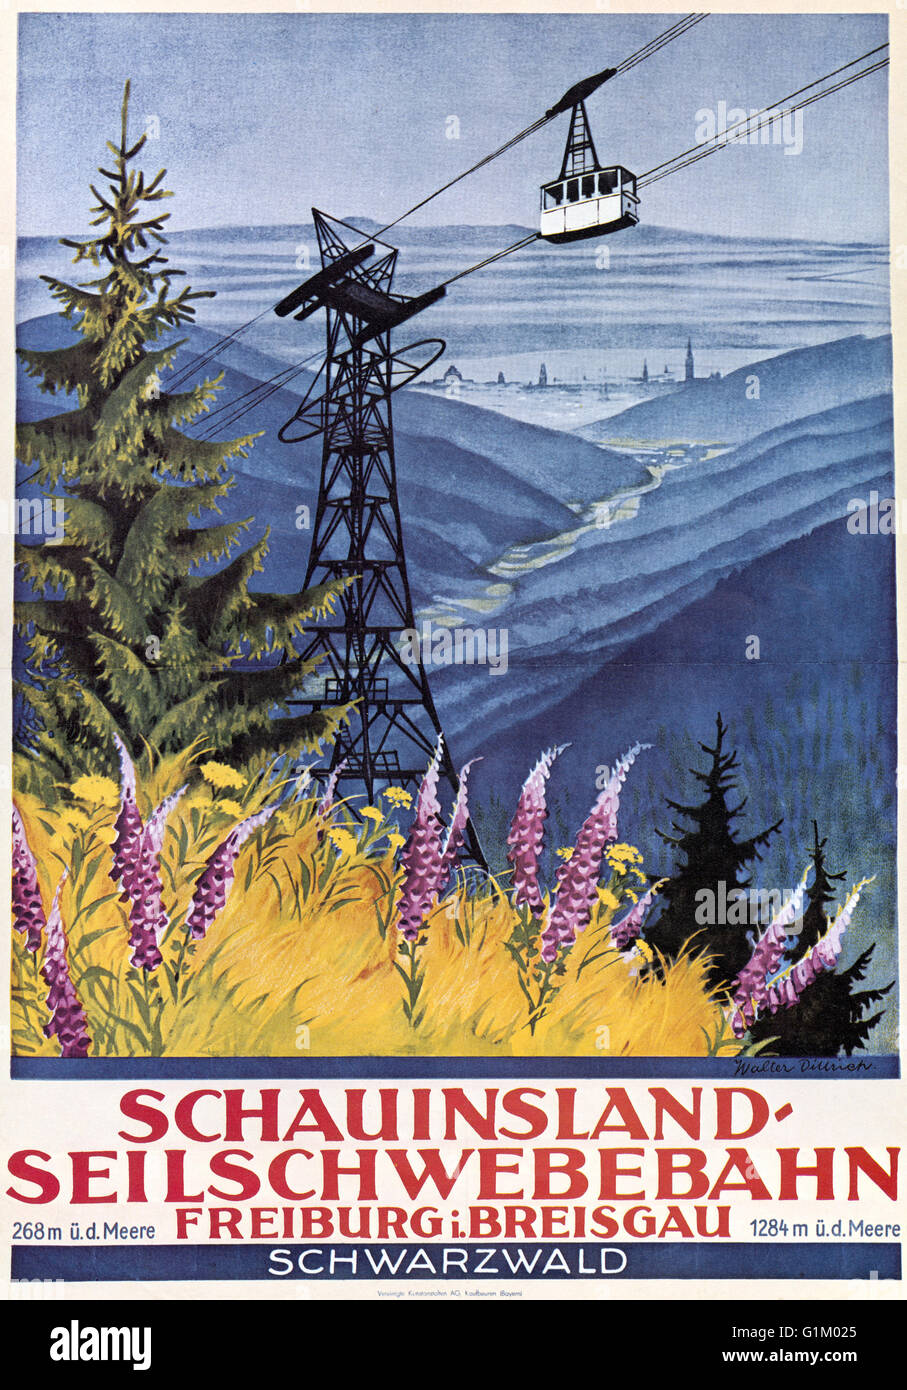 POSTER di viaggio, c1920. Il tedesco poster pubblicitari la funivia sul monte Schauinsland nella Foresta Nera. Litografia, c1920s. Foto Stock